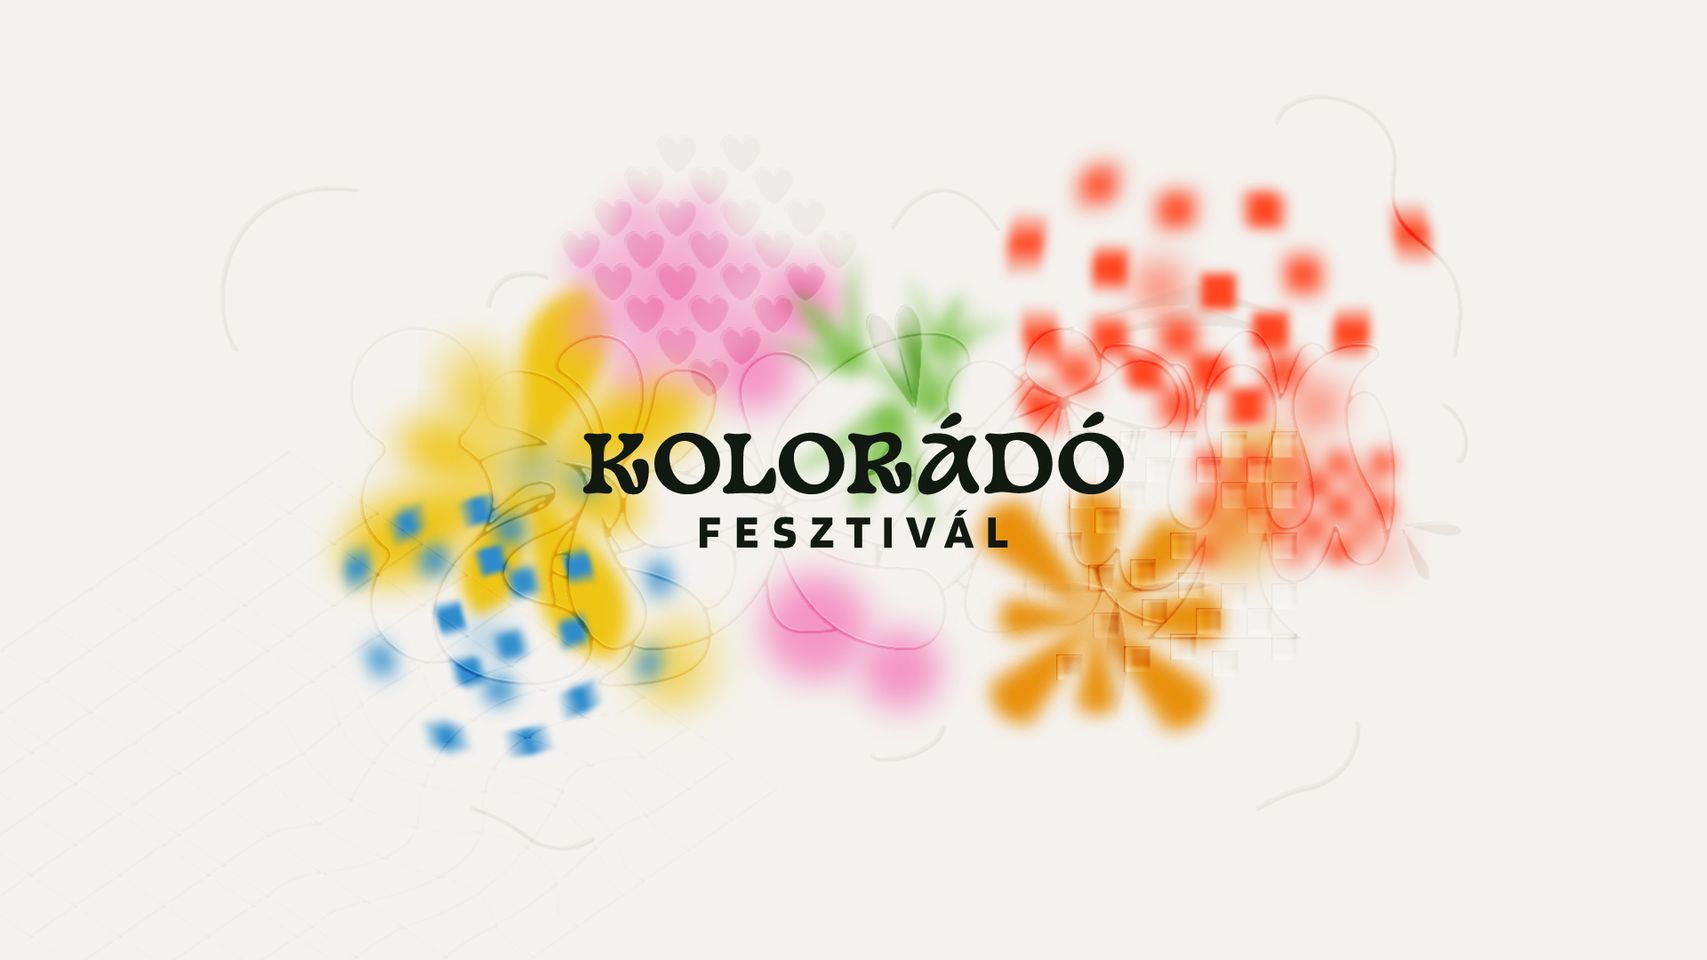 Kolorádó Festival, Nagykovácsi, 29 June - 2 July